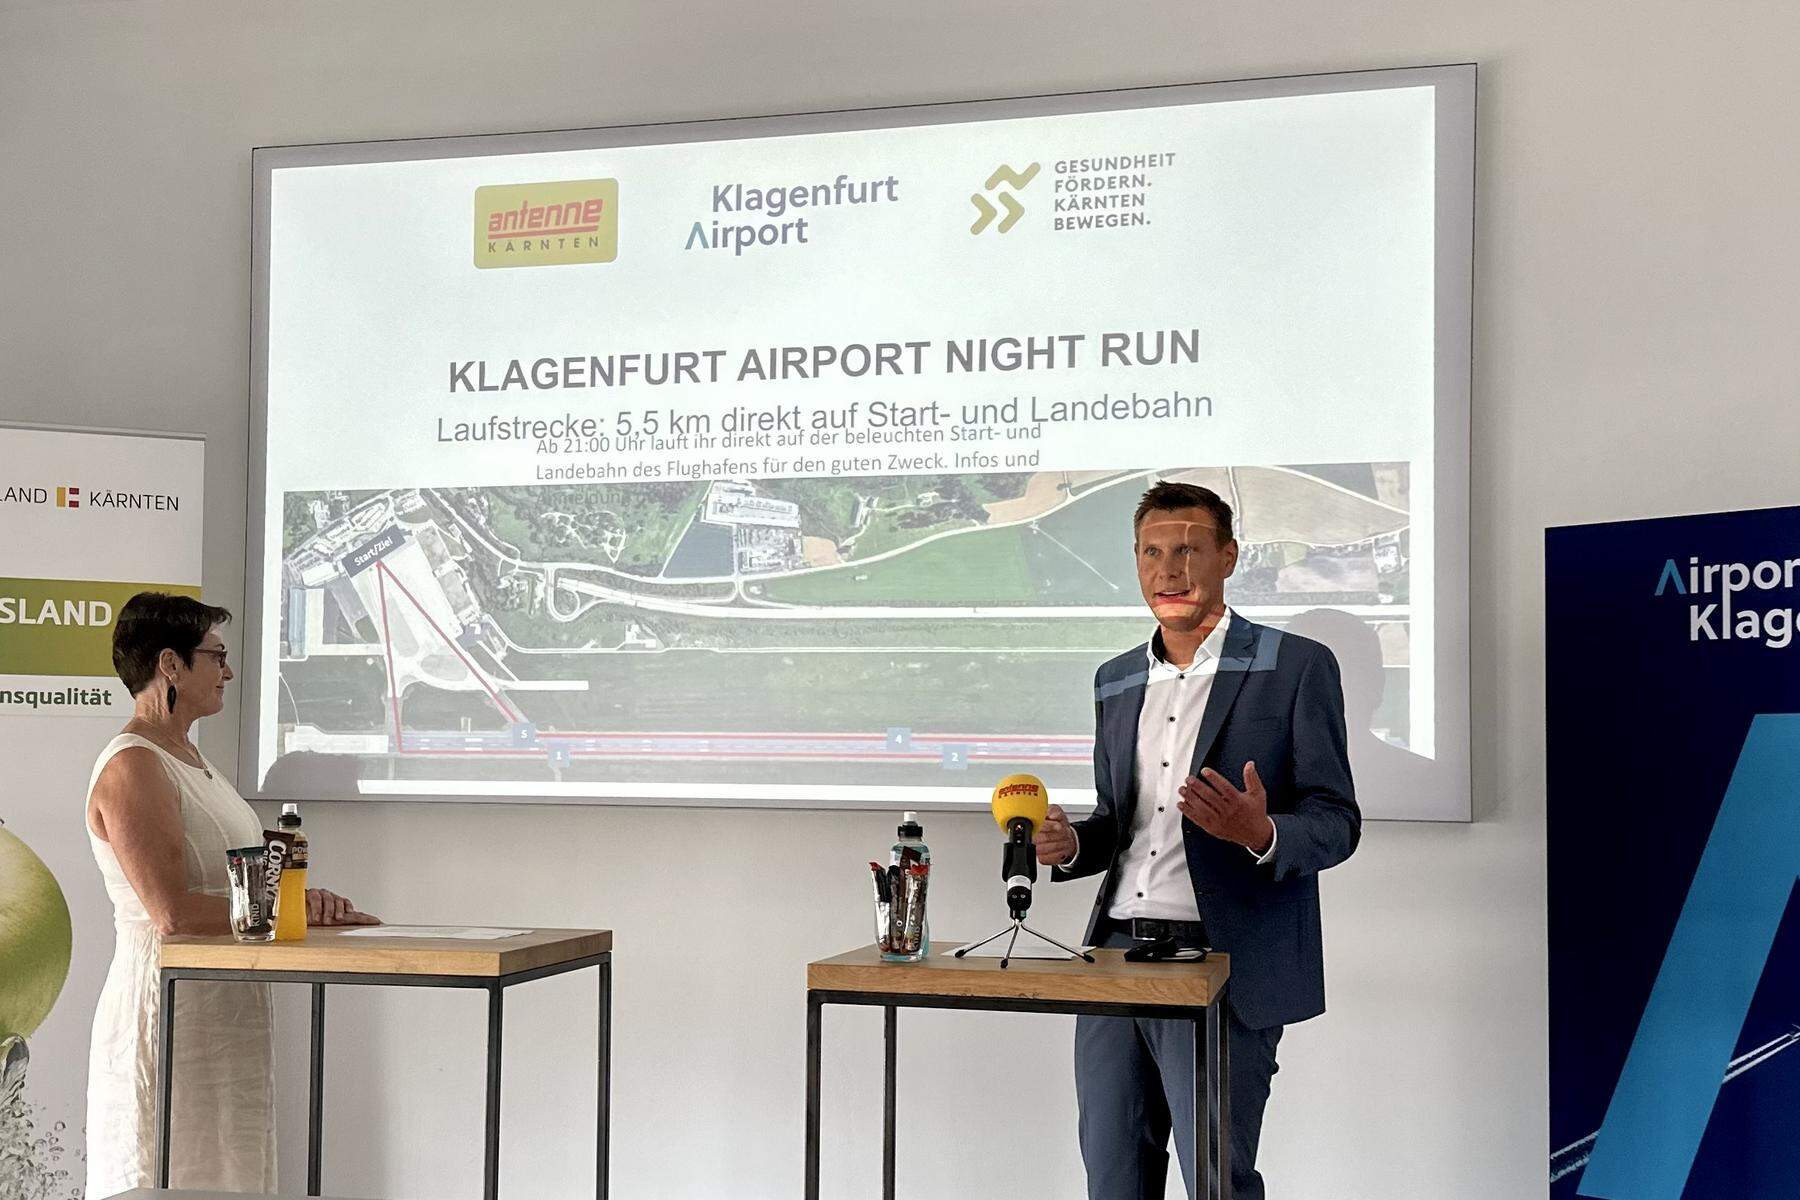 Flughafen Klagenfurt öffnet Start- und Landebahn für Night Run